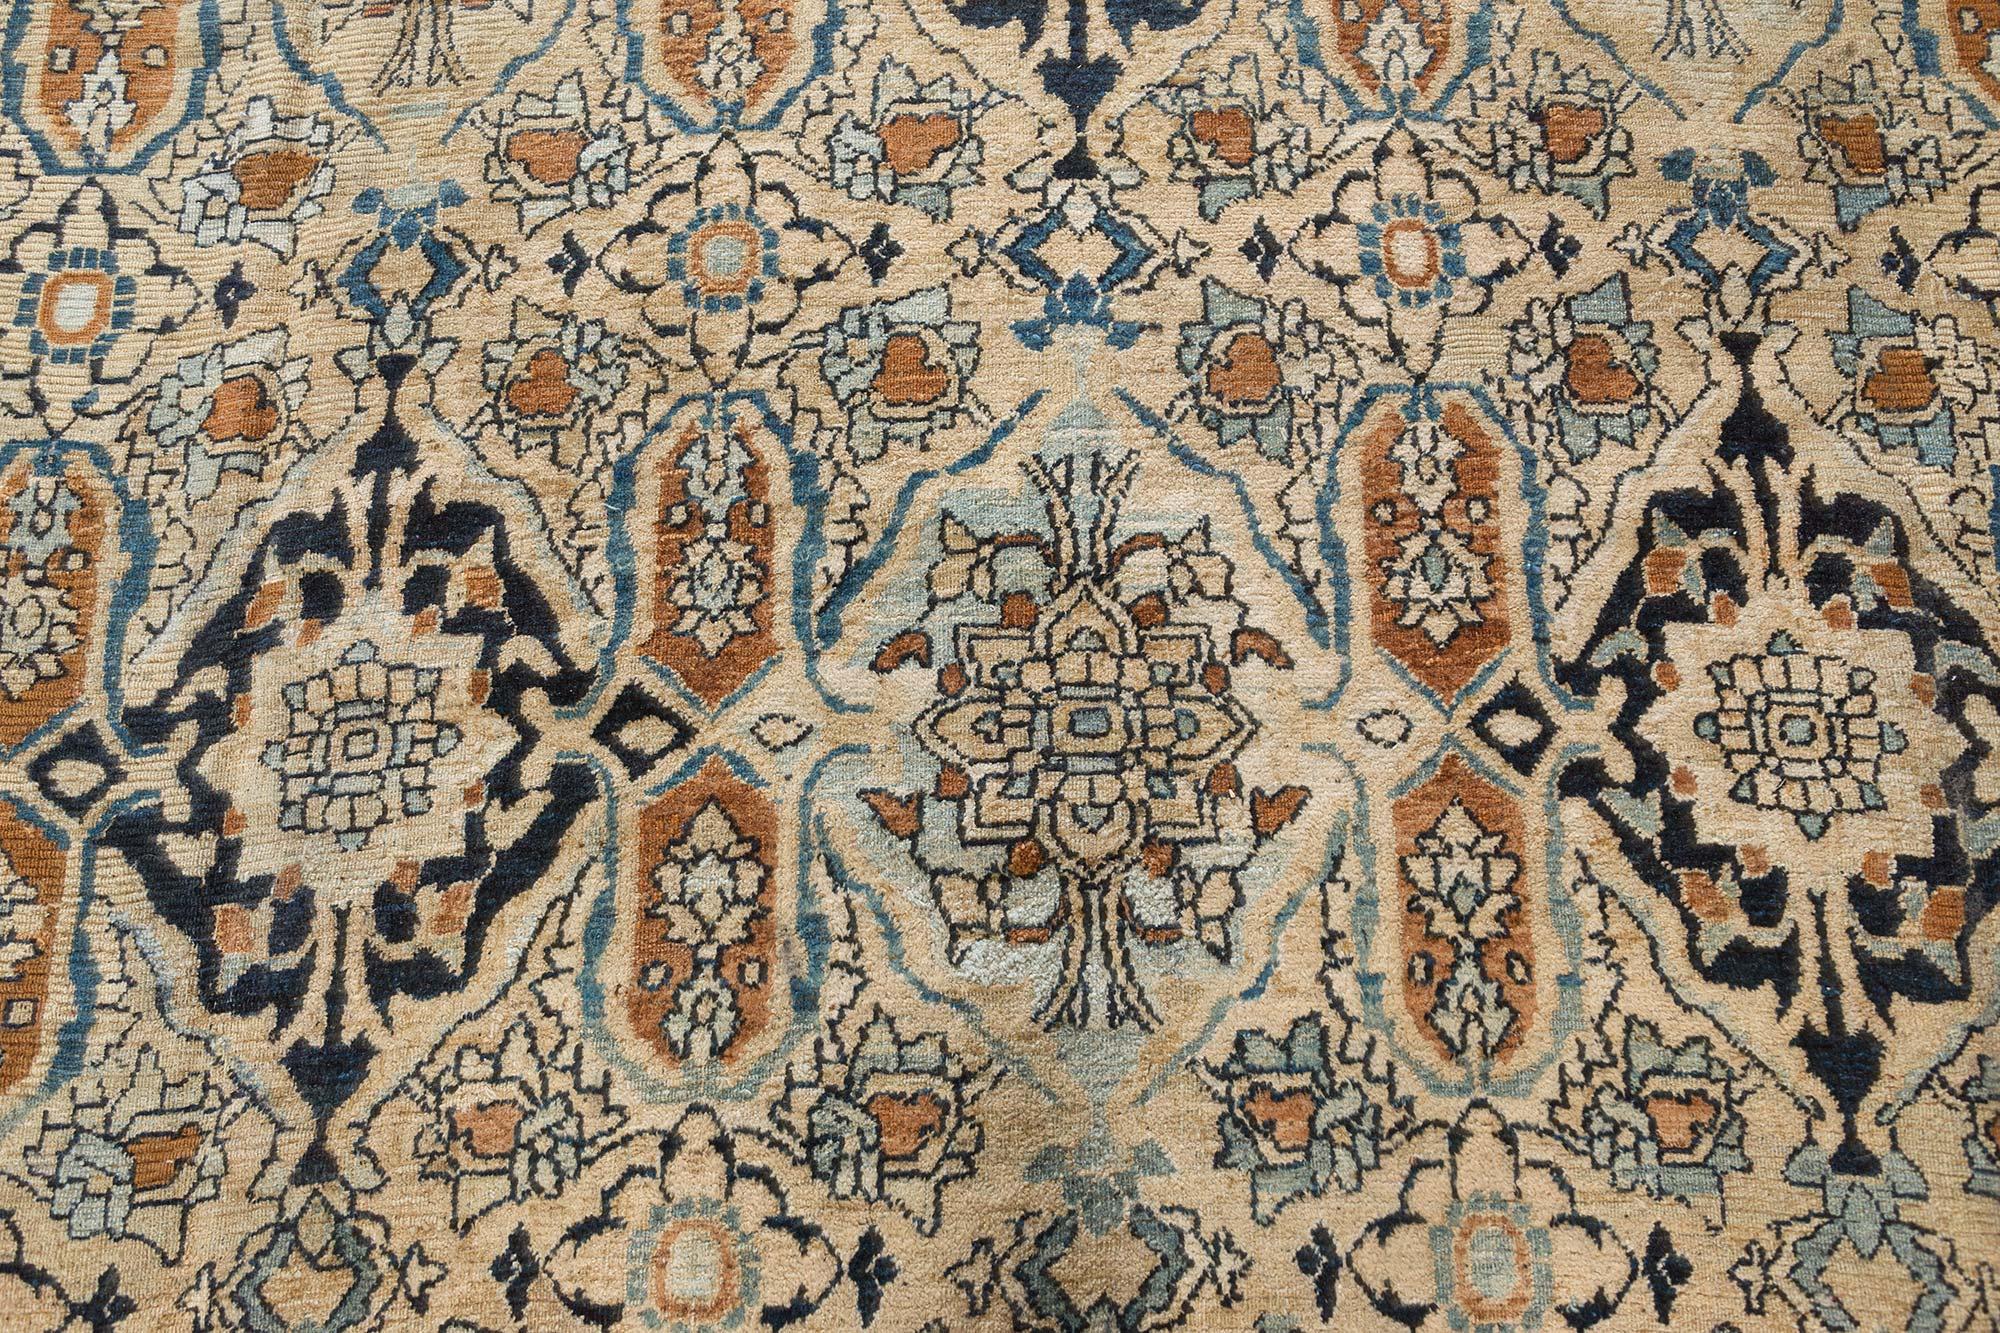 Vintage Persian Meshad Beige handmade wool rug
Size: 11'1